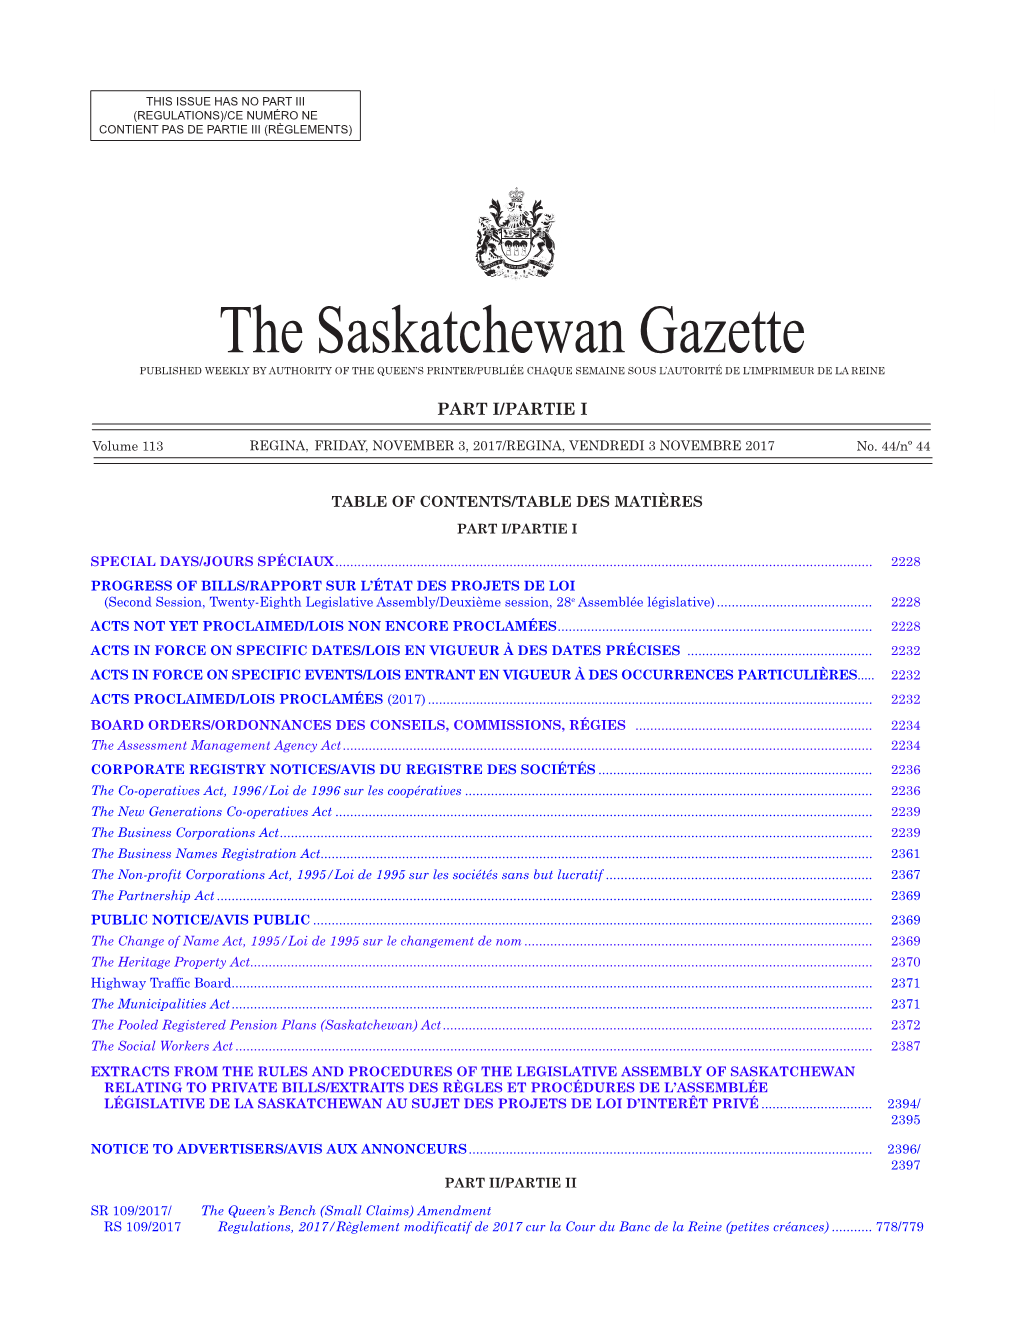 The Saskatchewan Gazette, 3 Novembre 2017 2227 (Regulations)/Ce Numéro Ne Contient Pas De Partie Iii (Règlements)